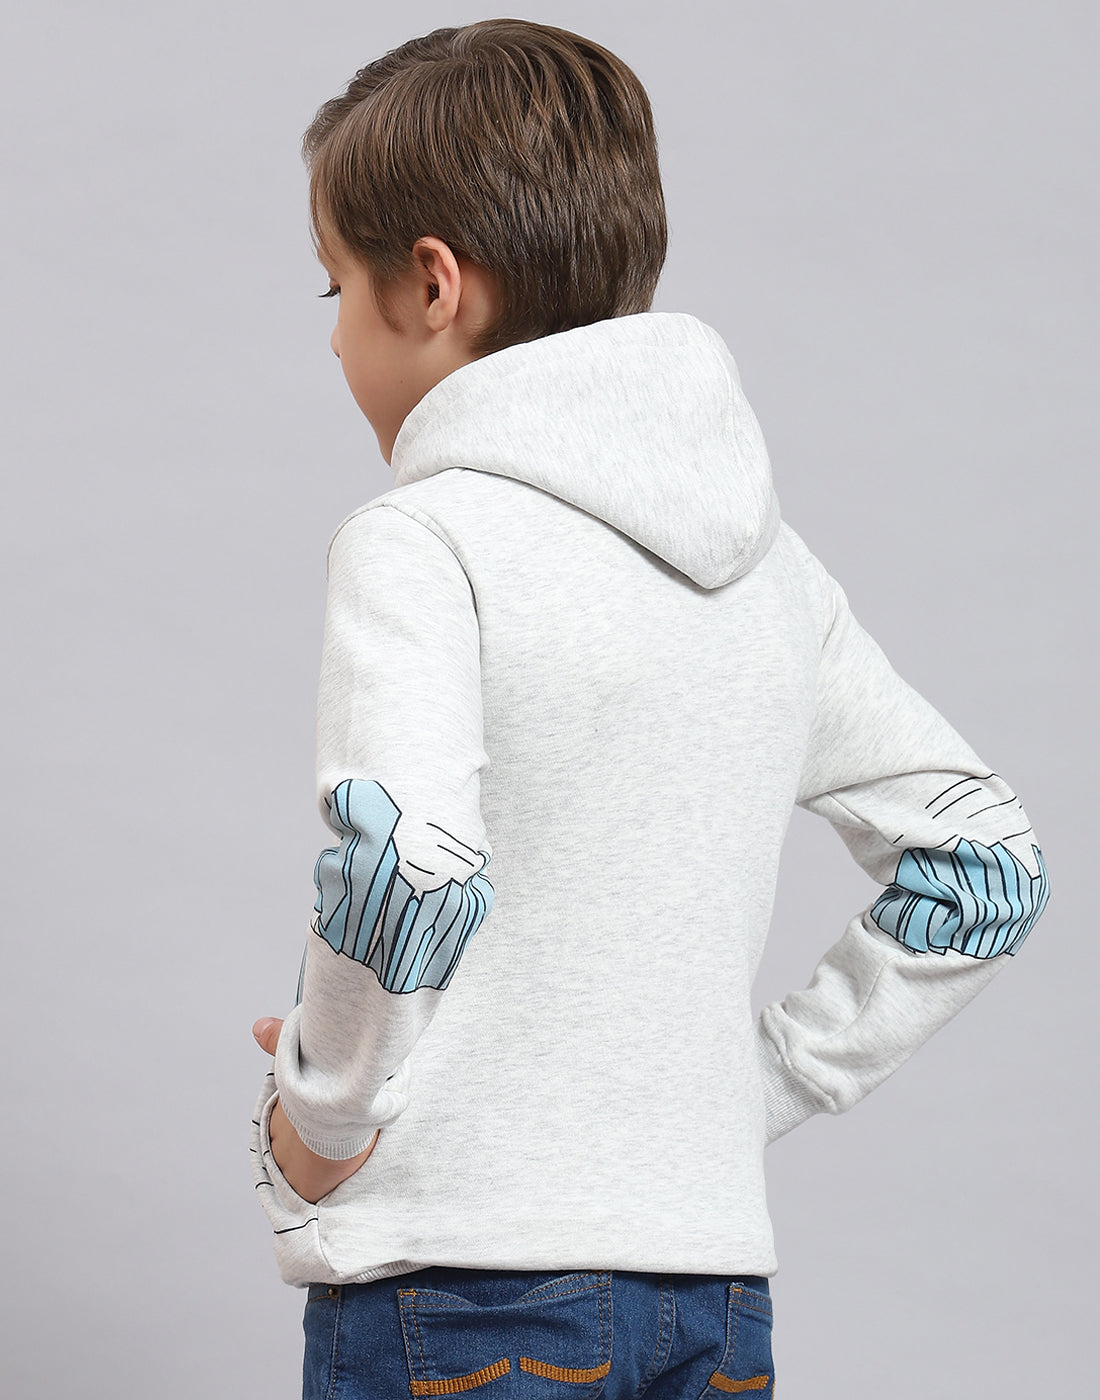 Boys Grey Melange Printed Hooded Full Sleeve Sweatshirt